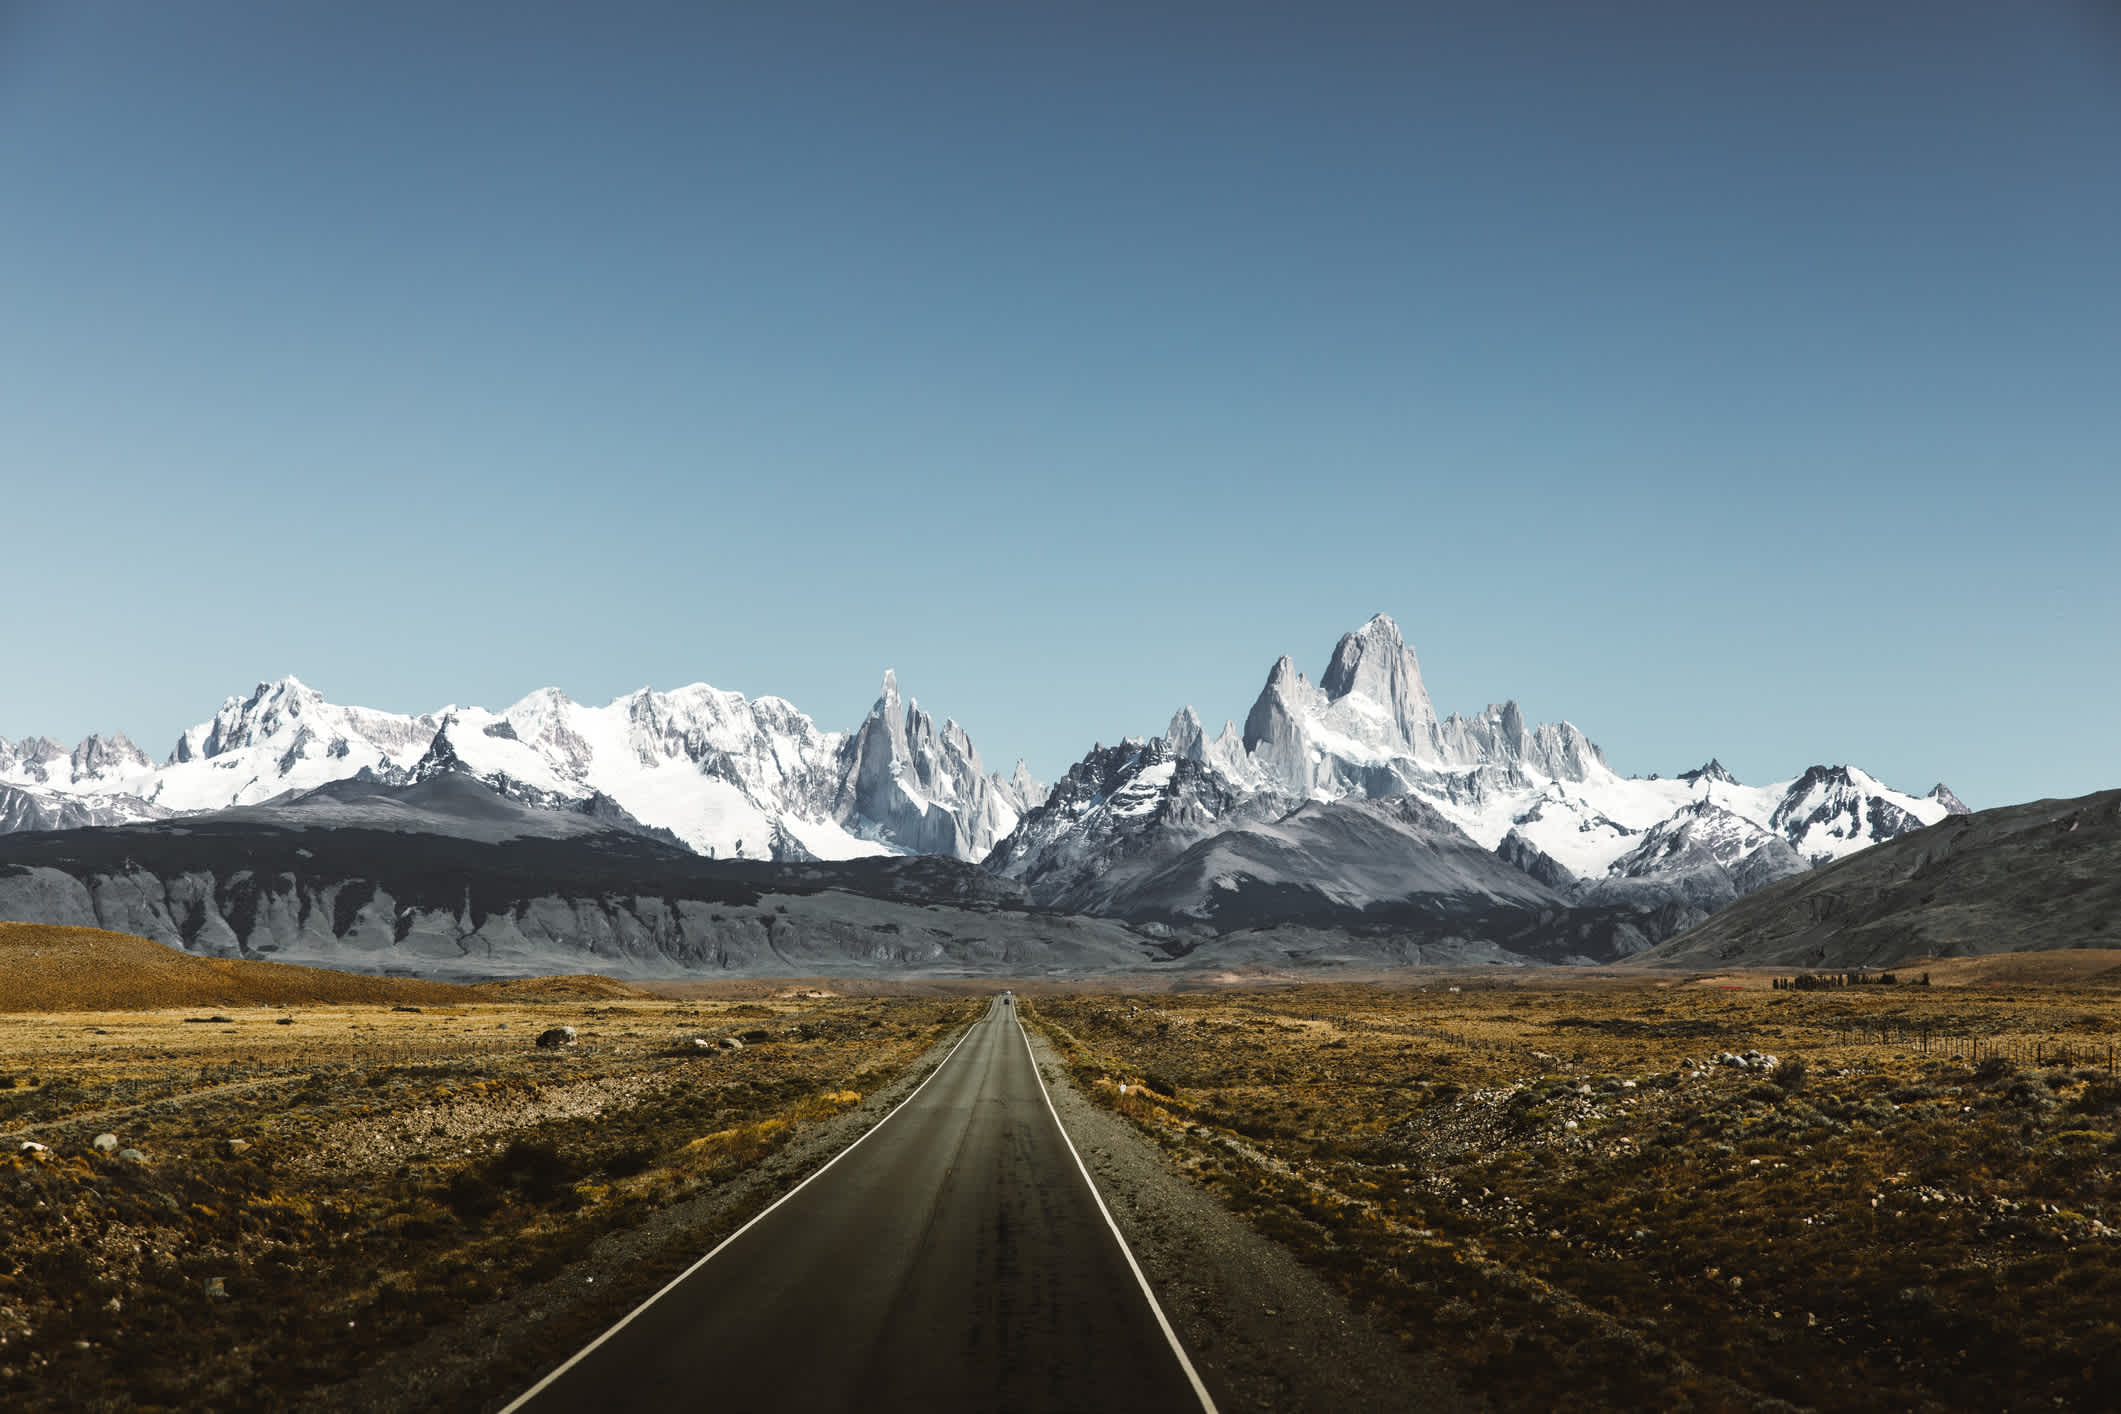 Vue sur les montagnes et la route panoramique d'El Chaltén, en Argentine